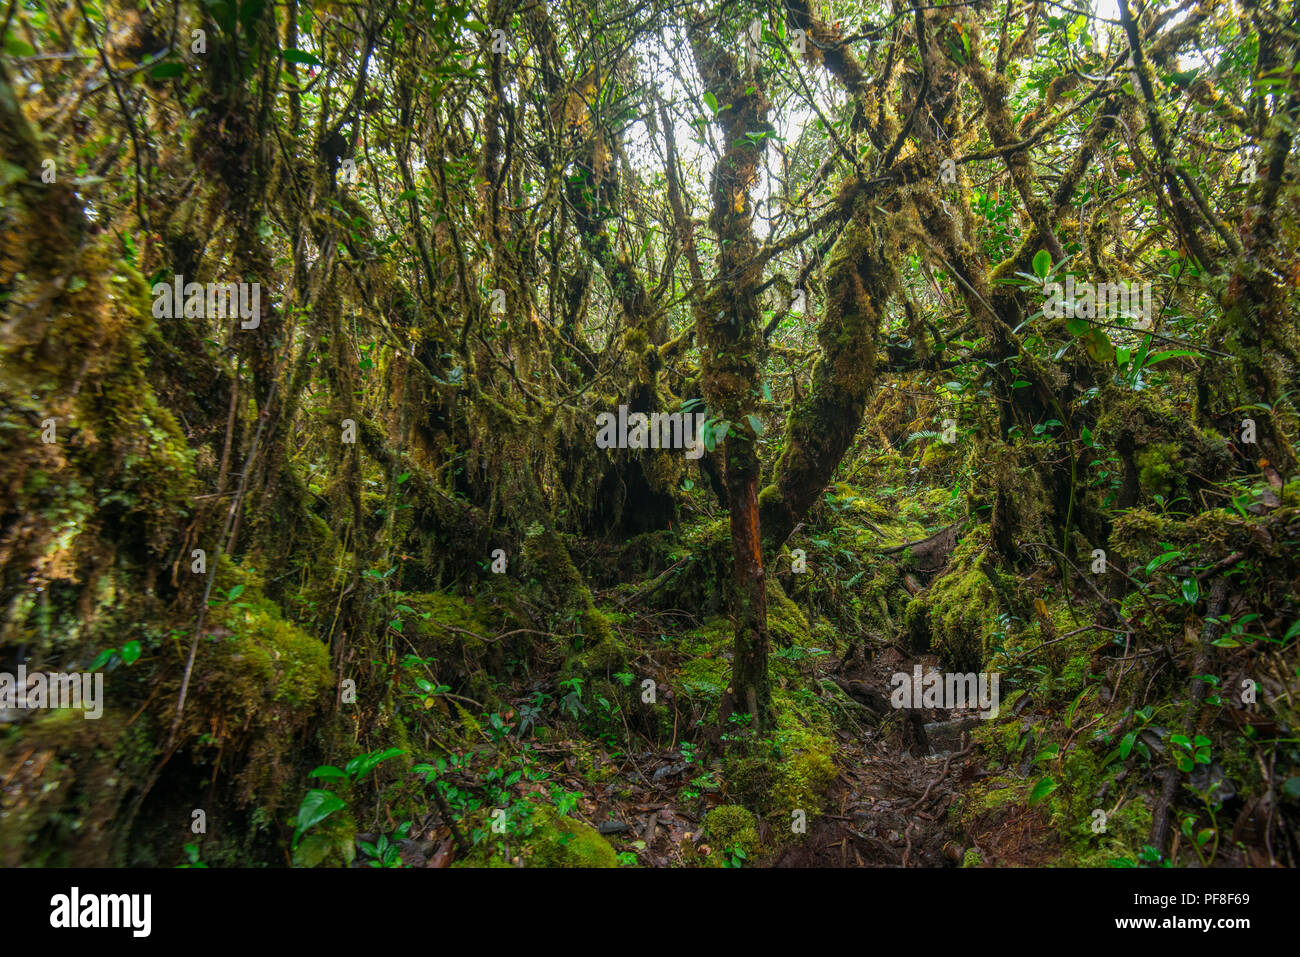 In montanen Heide Wald (nebelwald) mit vielen verkümmerten Bäume in Moos bedeckt, in der Nähe der Gipfel des Mount Trusmadi, Sabah, Malaysia (Borneo) Stockfoto